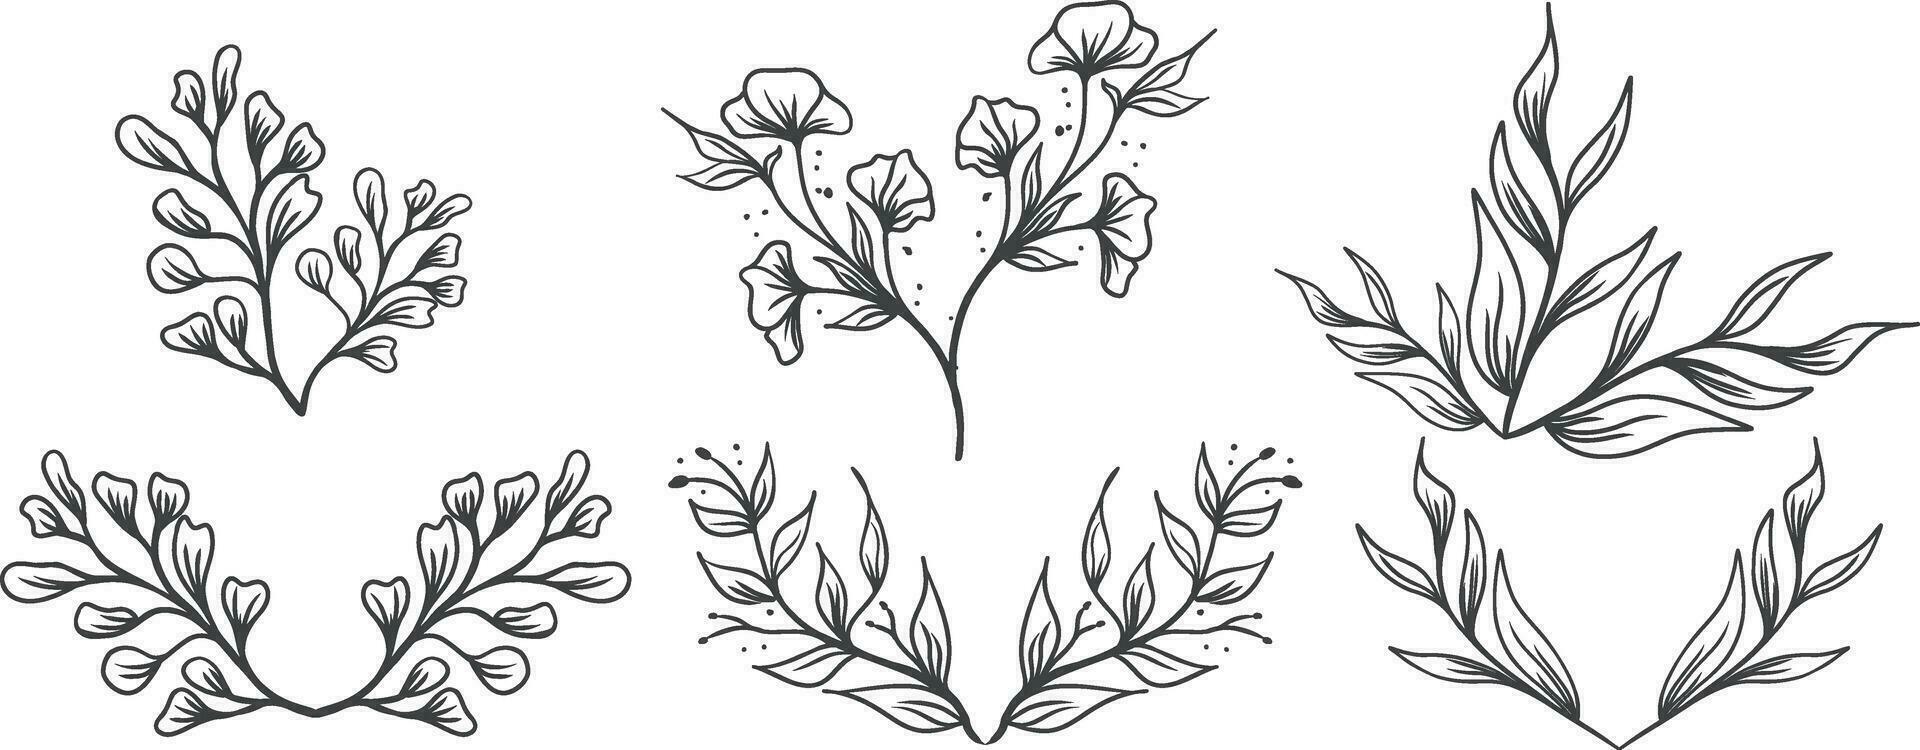 conjunto de floral elementos, flor, hojas. mano dibujado bosquejo lápiz estilo vector